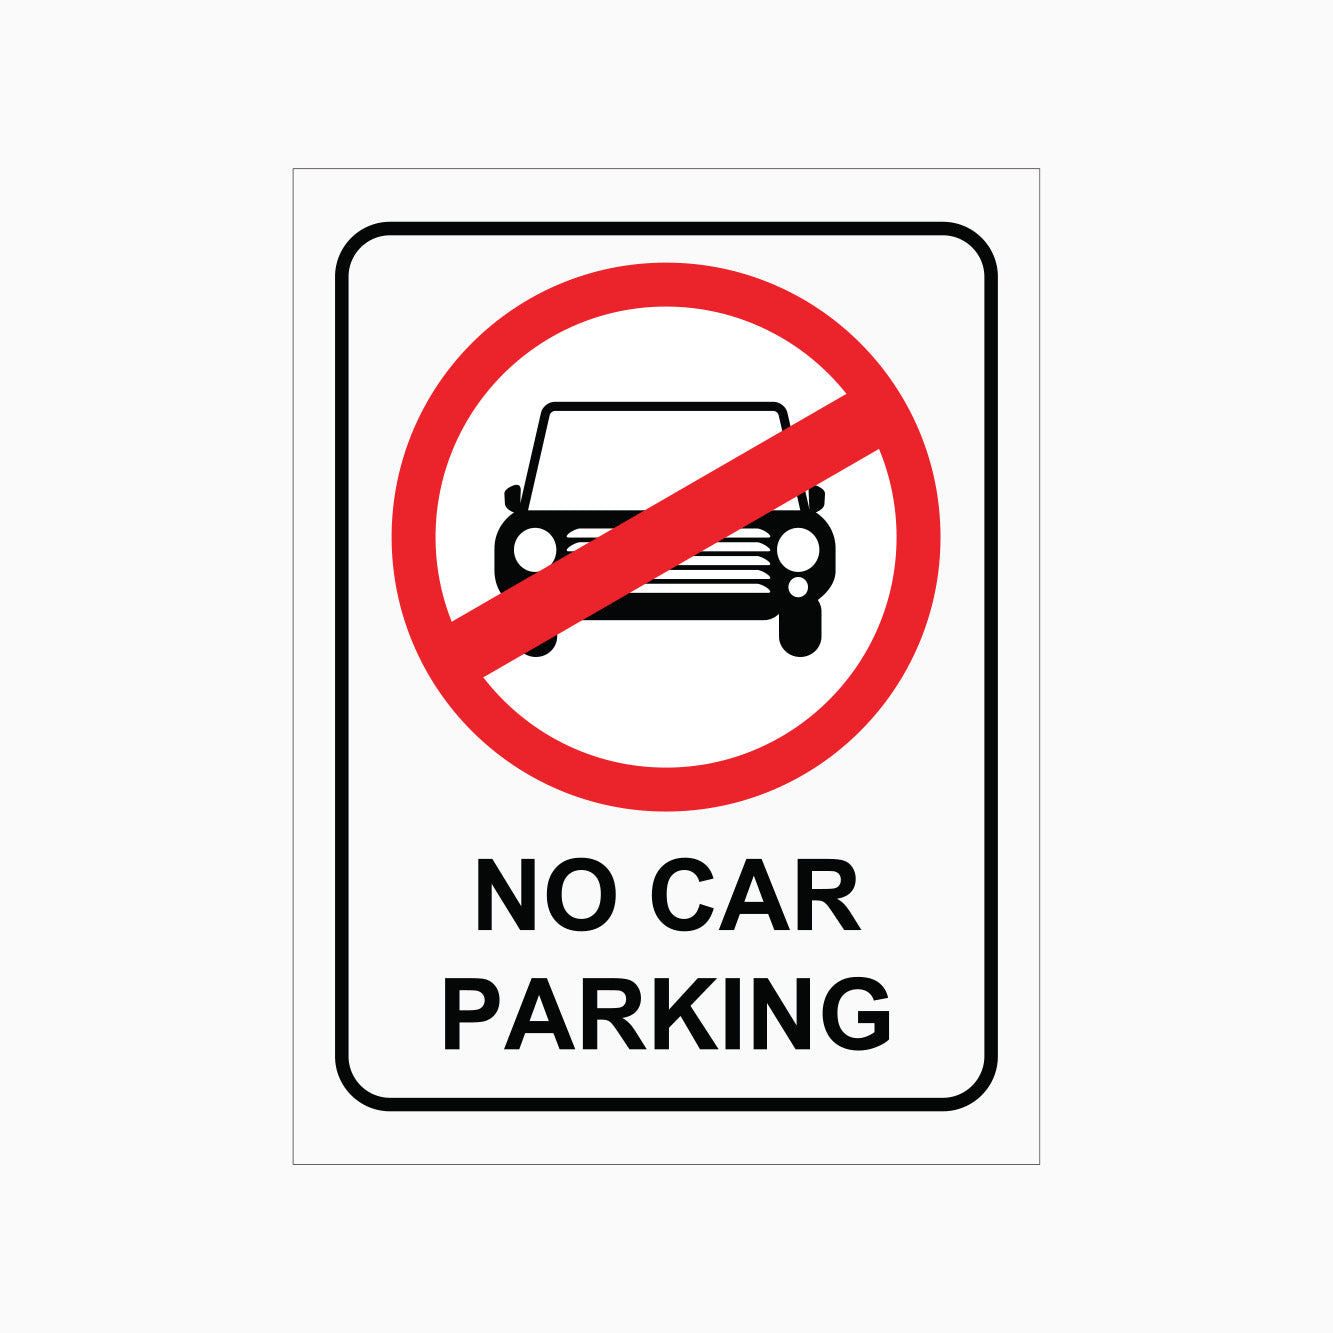 NO CAR PARKING SIGN